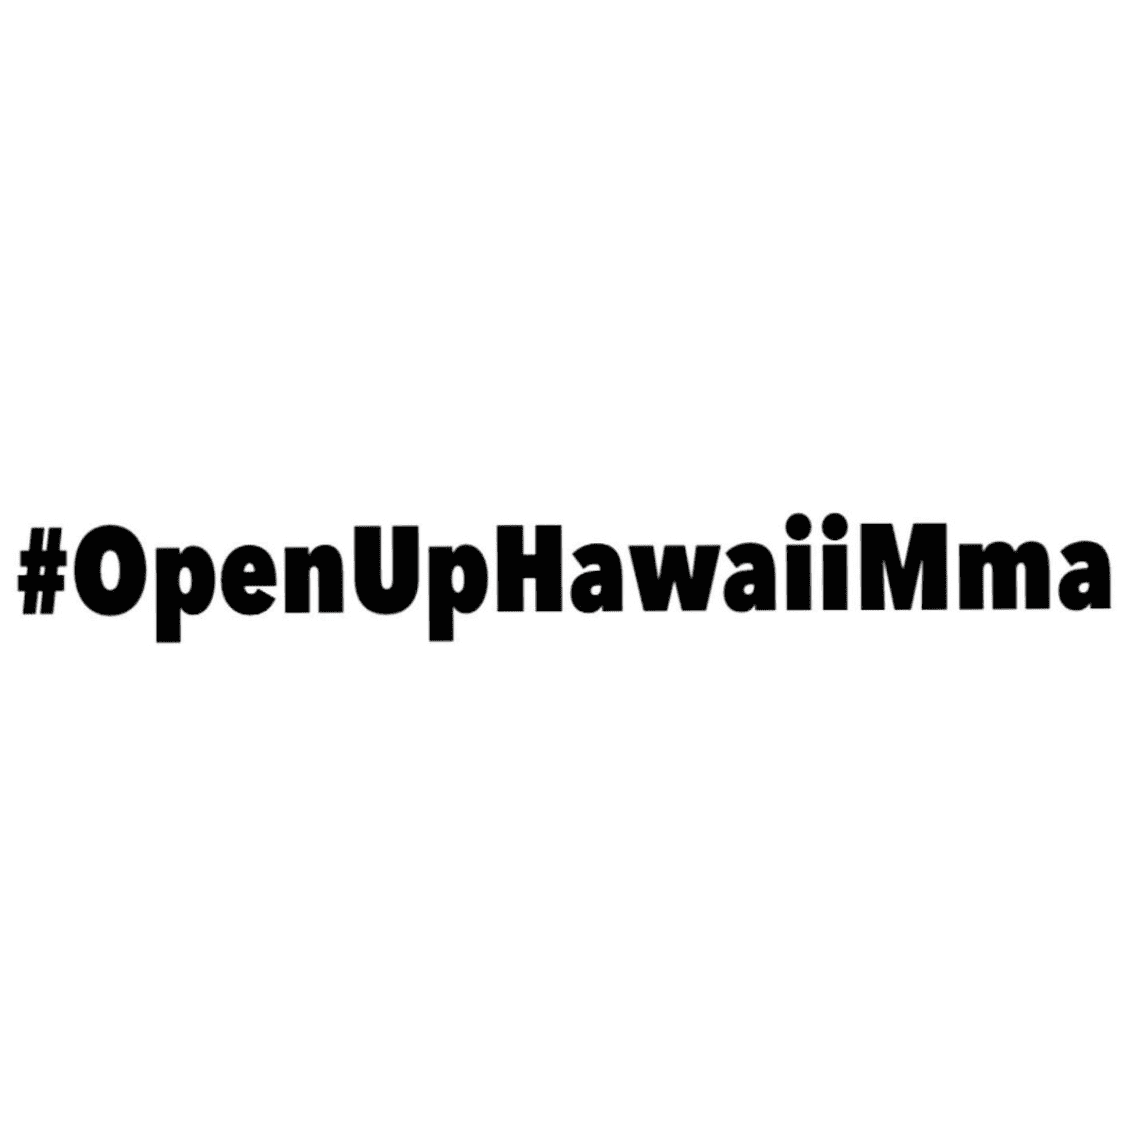 #OpenUpHawaiiMMA